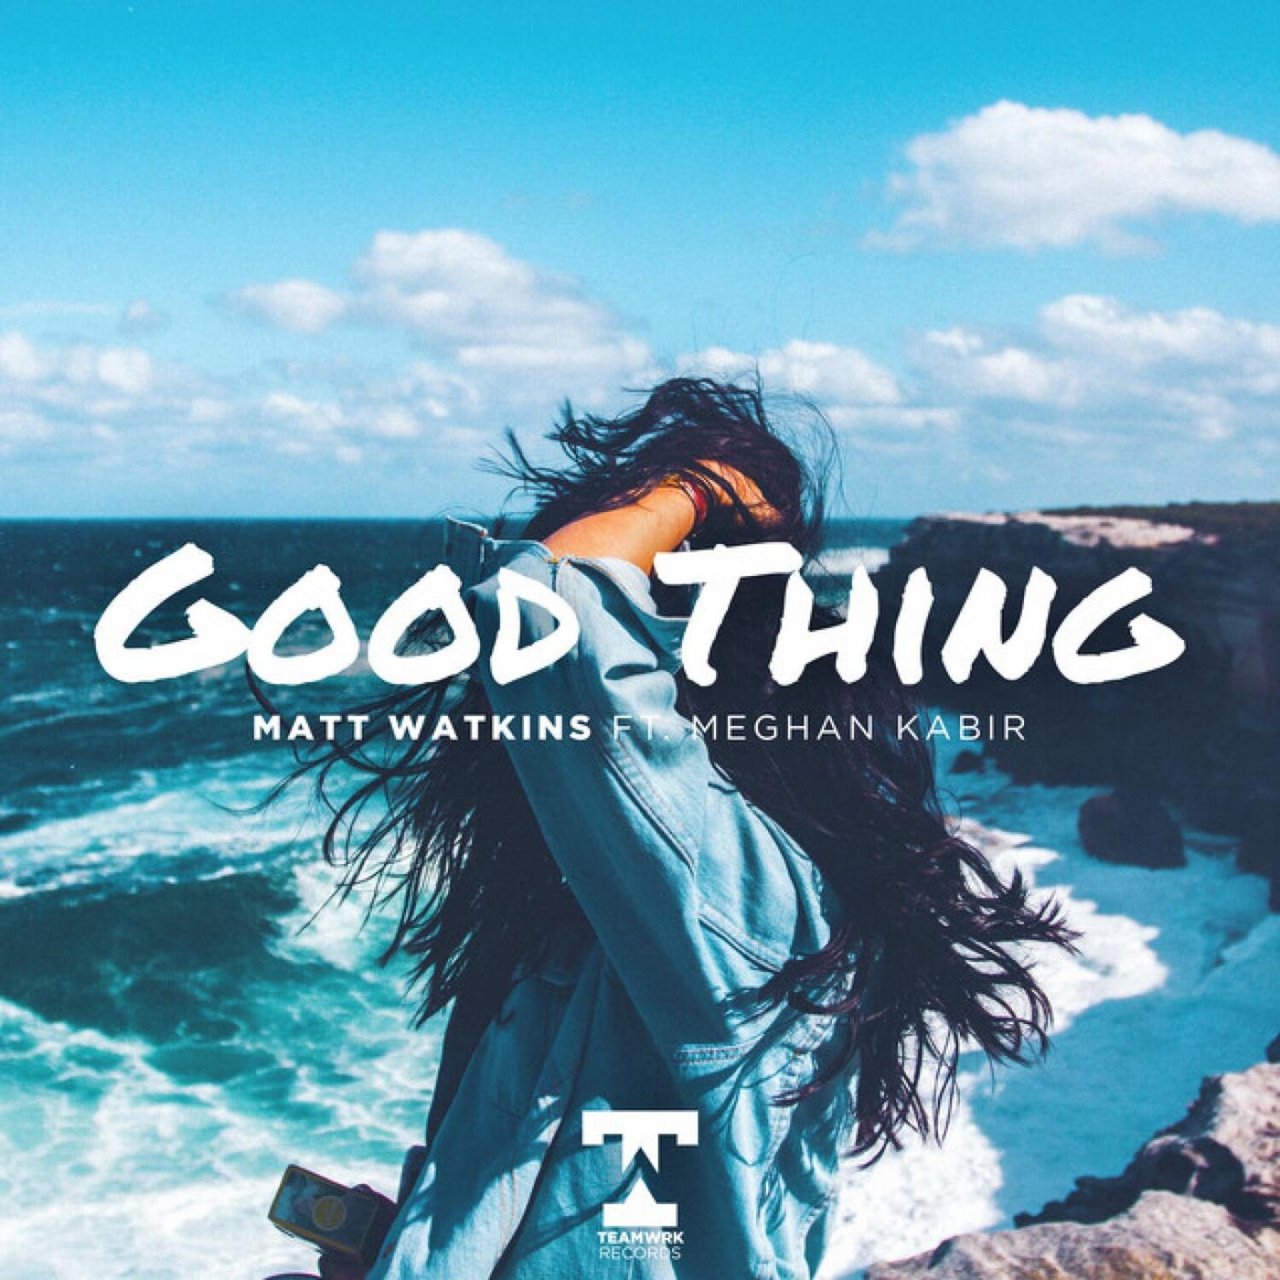 Matt Watkins featuring Meghan Kabir — Good Thing cover artwork